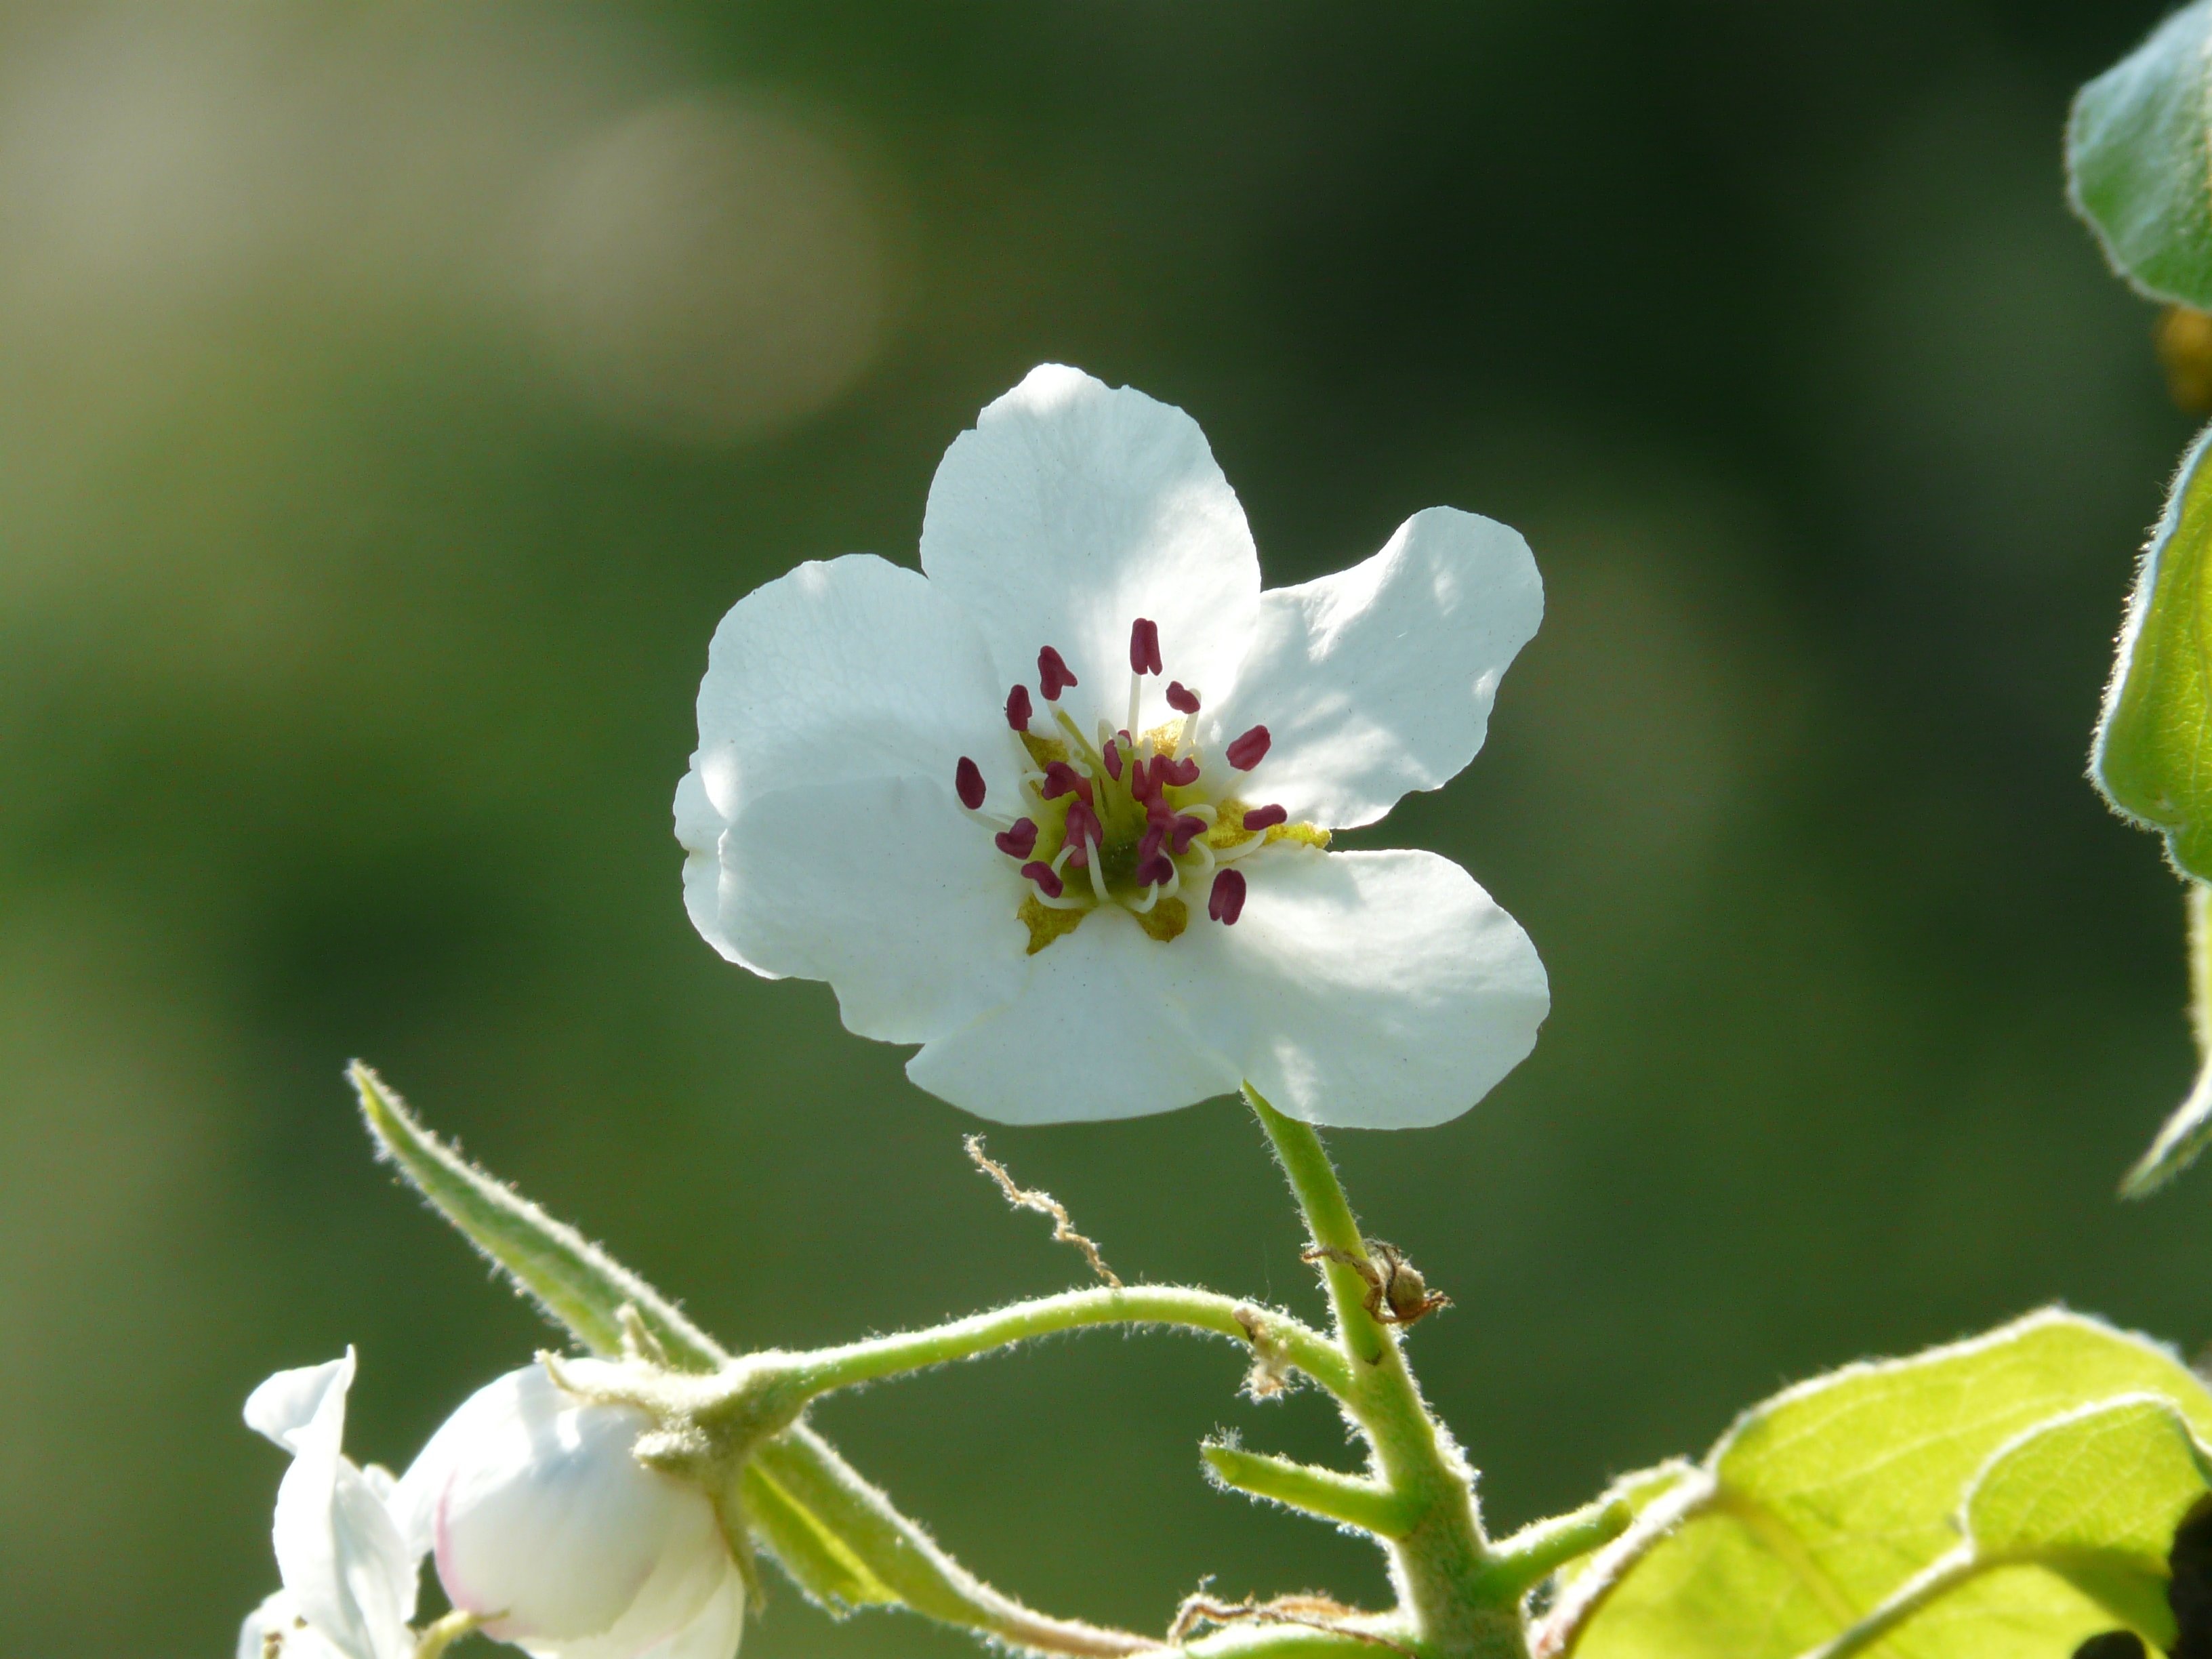 macro shot of white flower